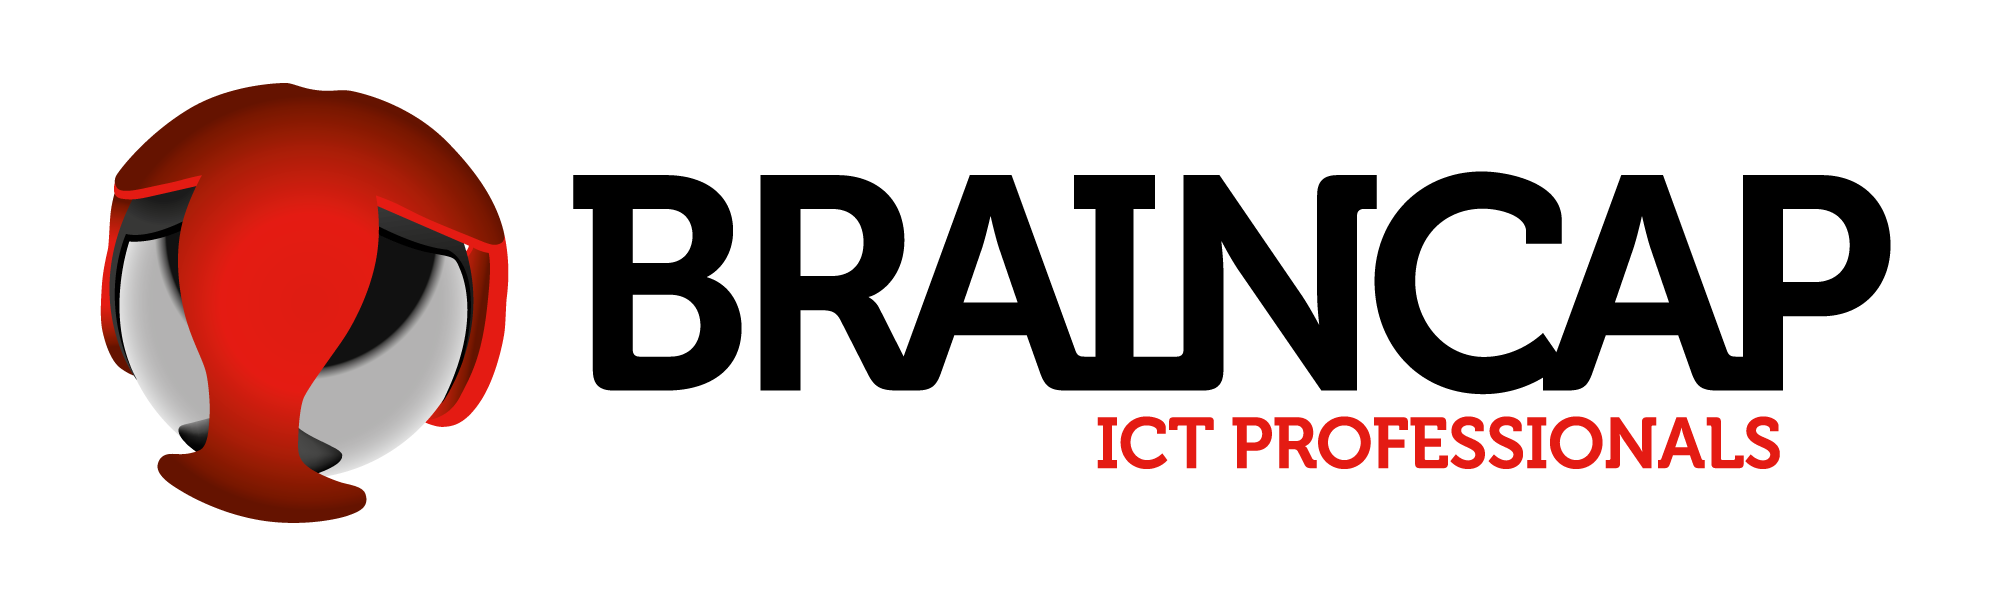 BrainCap_ICT Professionals